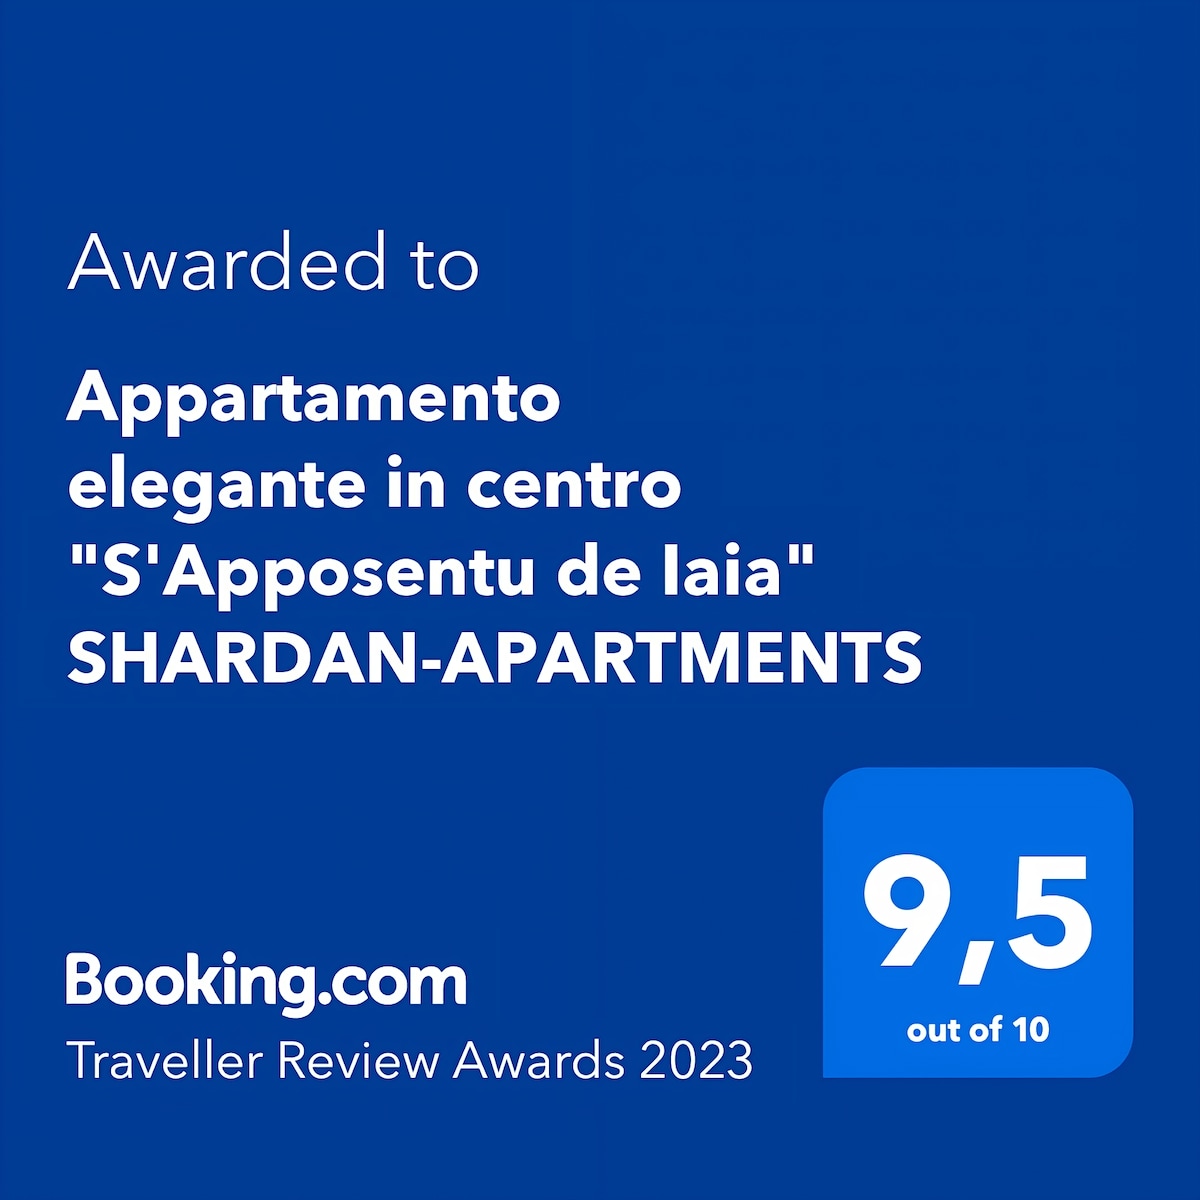 Elegant apartment in the center-ShardanApartmentS